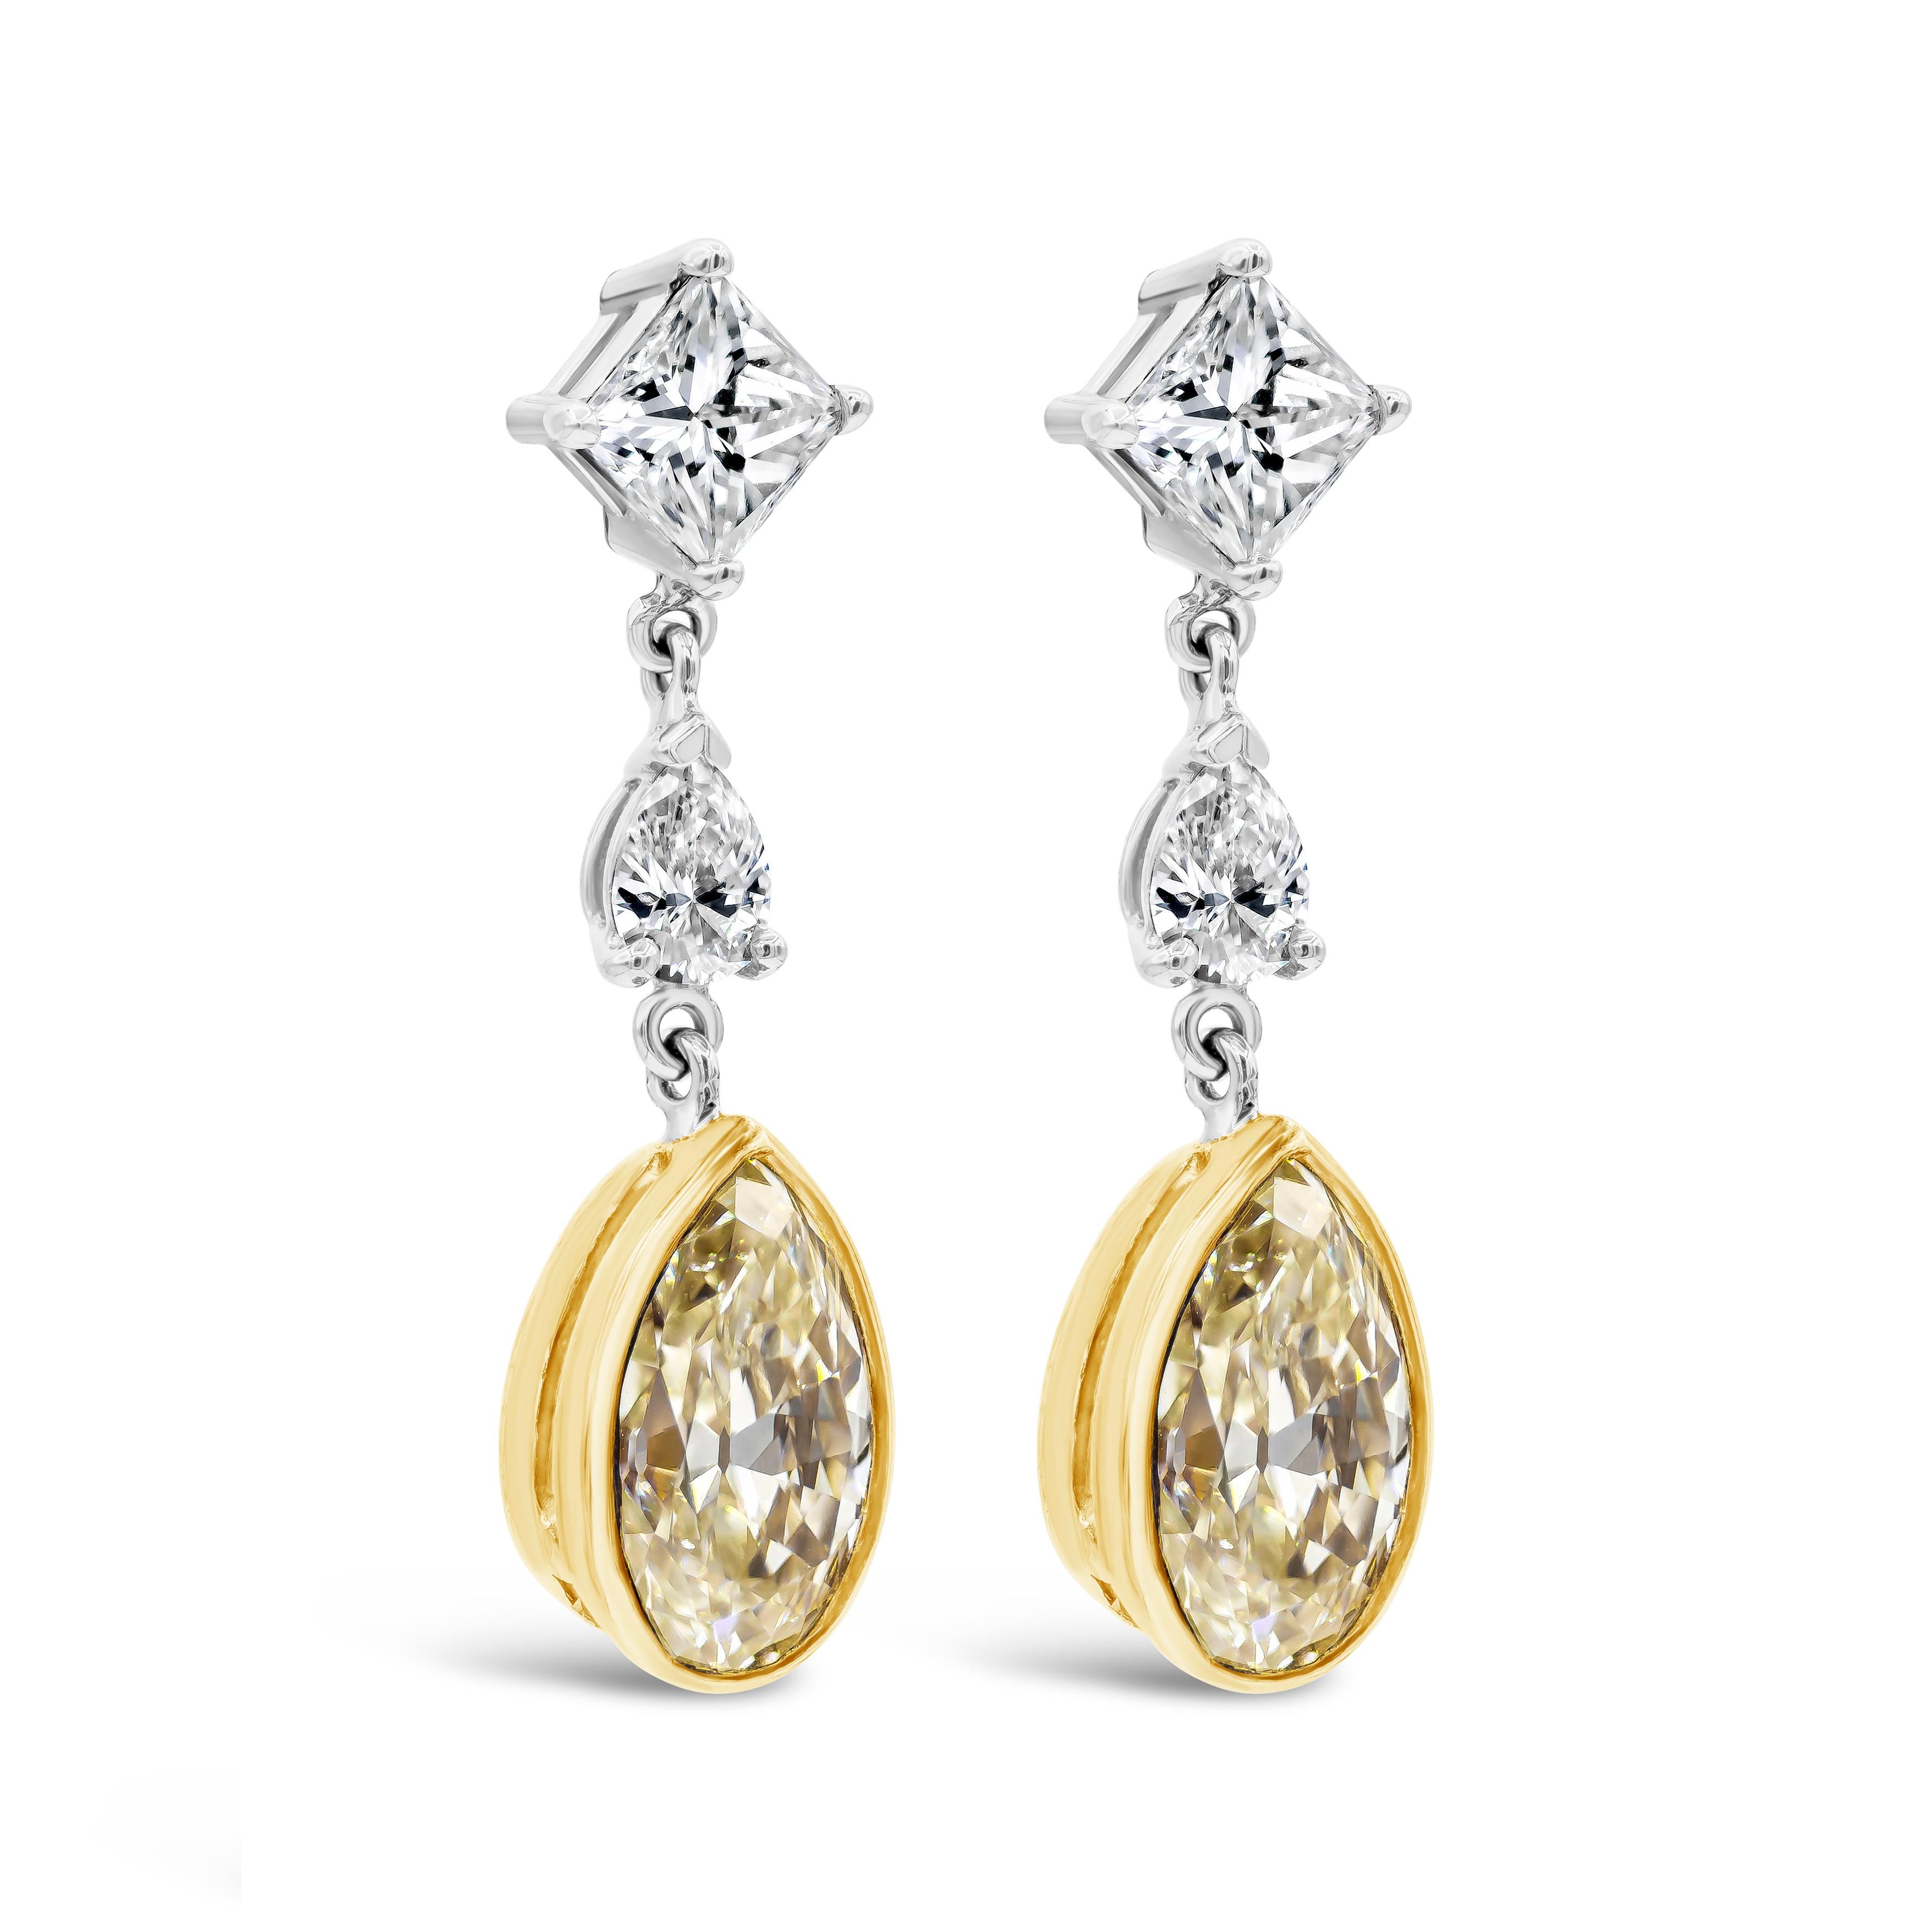 Dieses elegante Paar Ohrringe präsentiert einen birnenförmigen gelben Diamanten mit einem Gesamtgewicht von 2,46 Karat, eingefasst in 18 Karat Weißgold. Aufgehängt an einem kleineren birnenförmigen Diamanten und einem Diamanten im